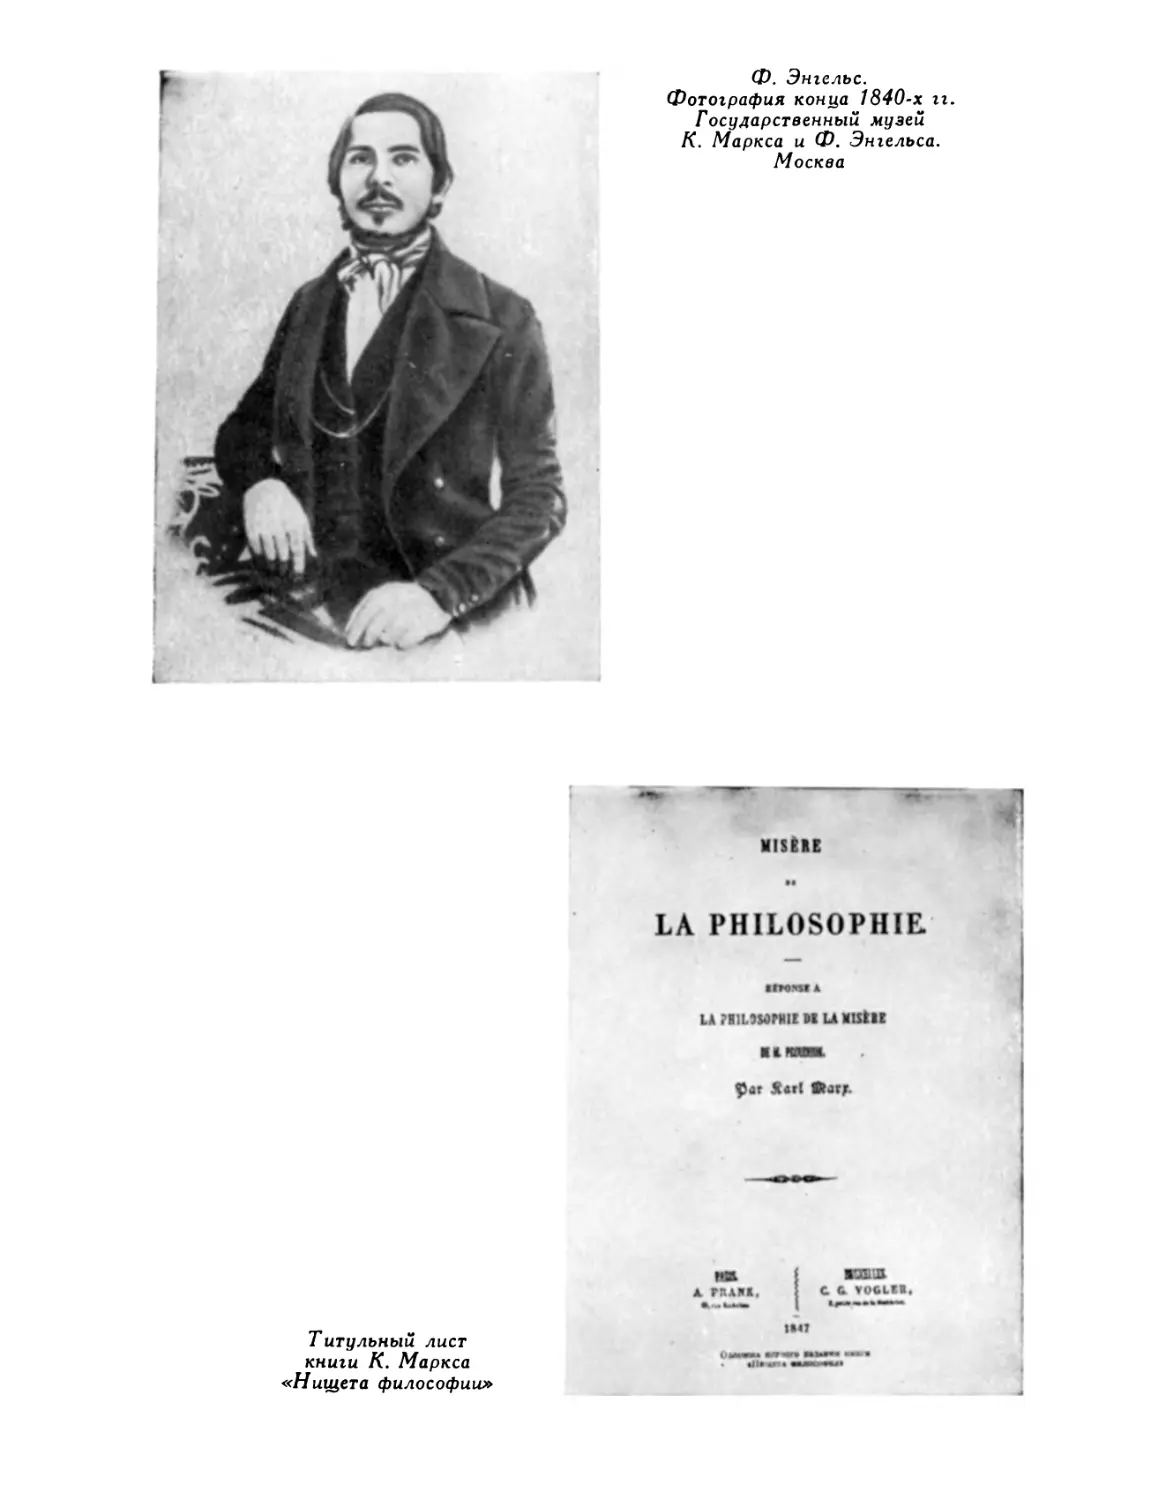 Ф. Энгельс. Фотография предположительно конца 1840-х гг.; Титульный лист книги К. Маркса «Нищета философии»